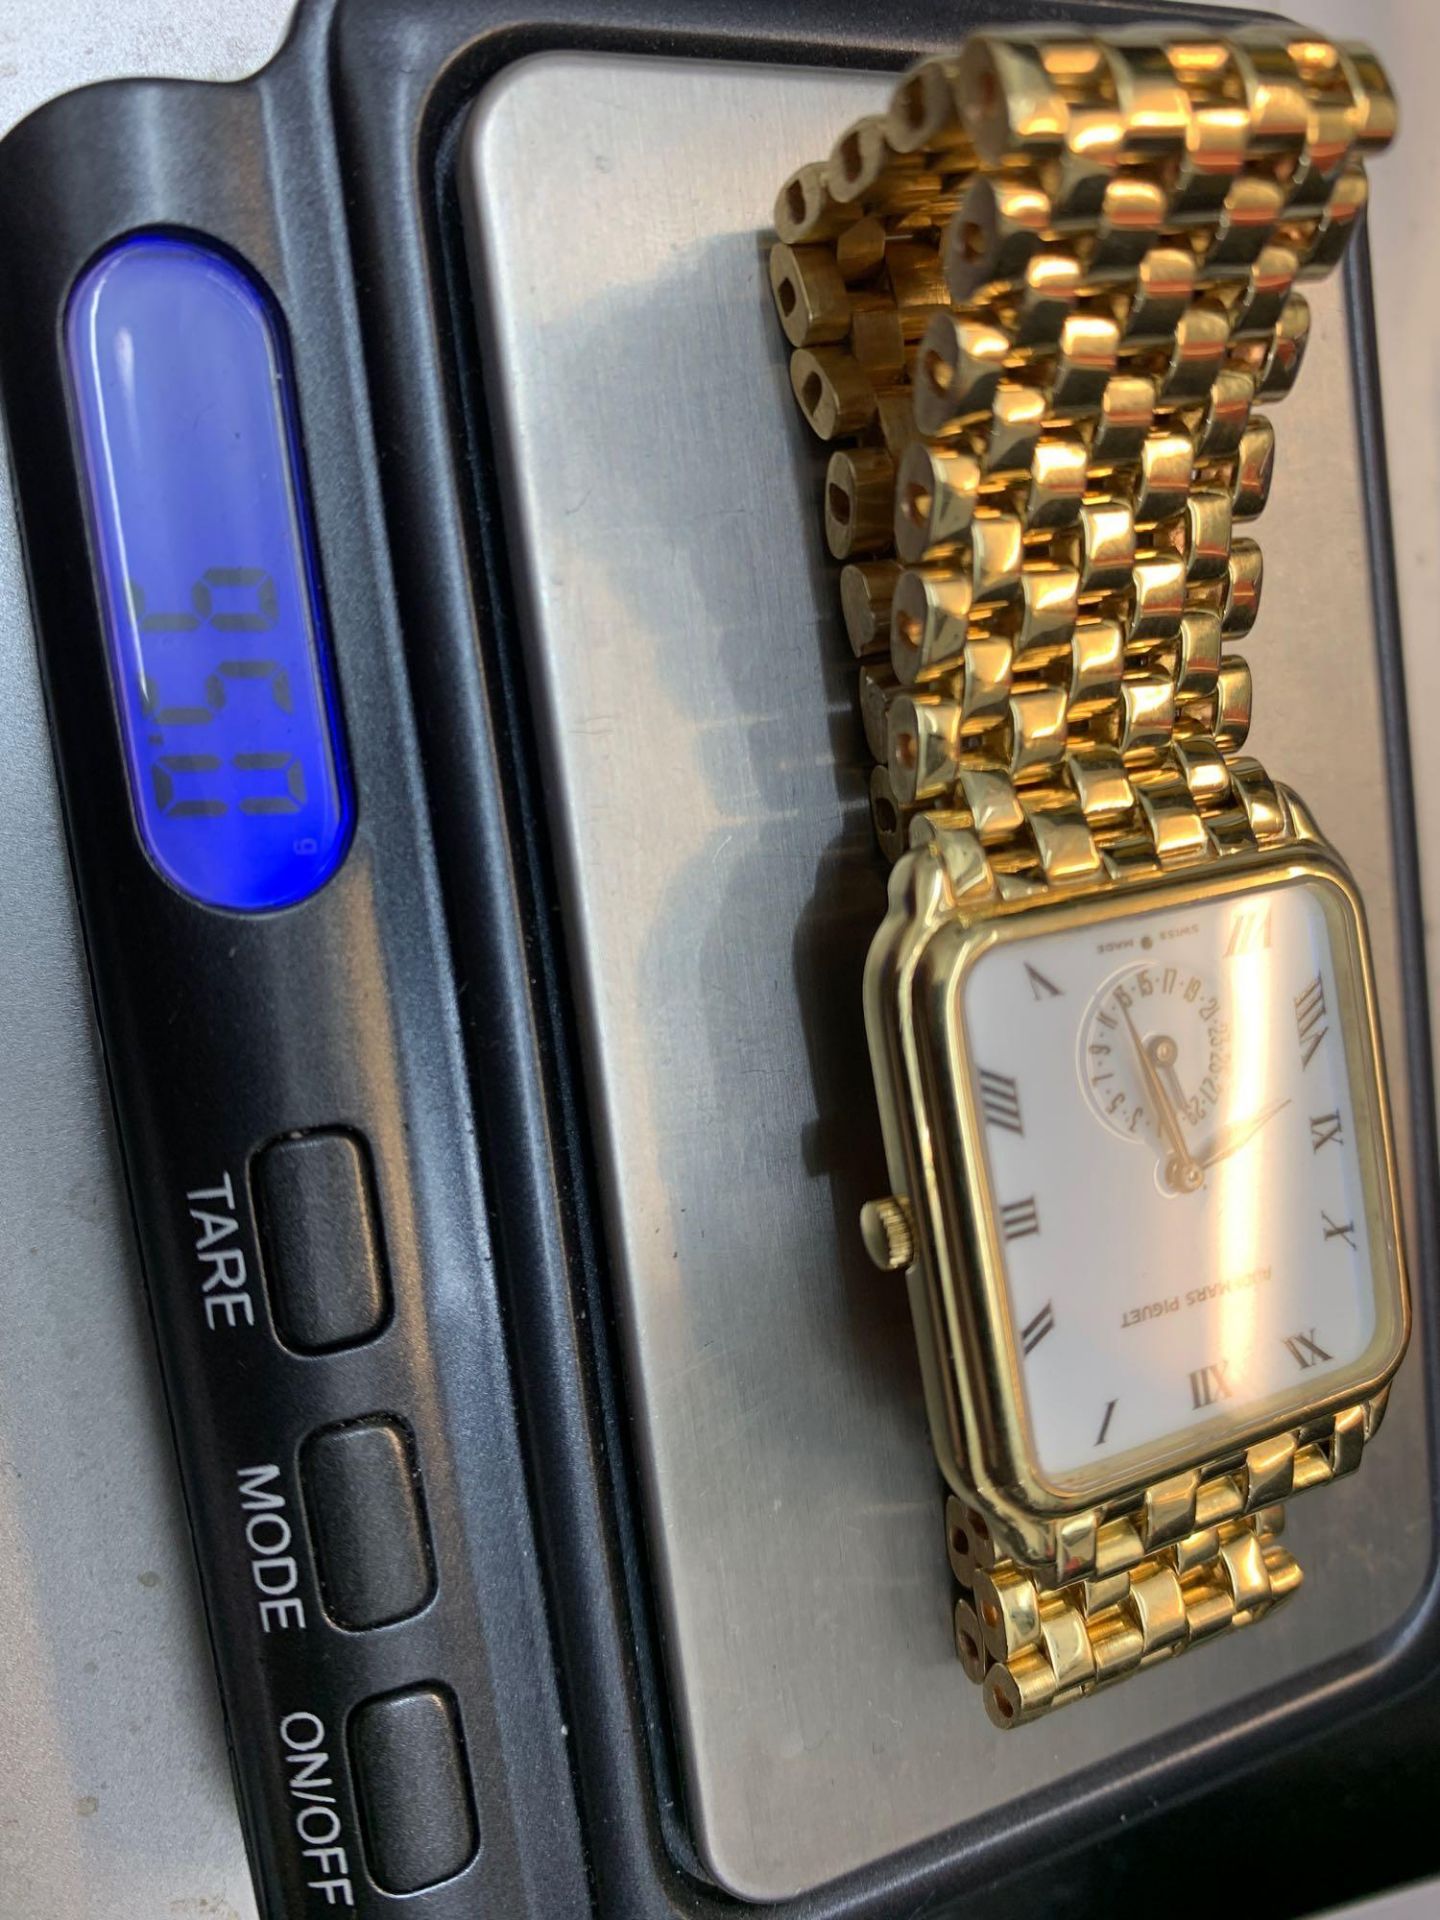 Audemars Piguet 18ct Gold watch 95 Grams With a Audemars box - Image 10 of 10